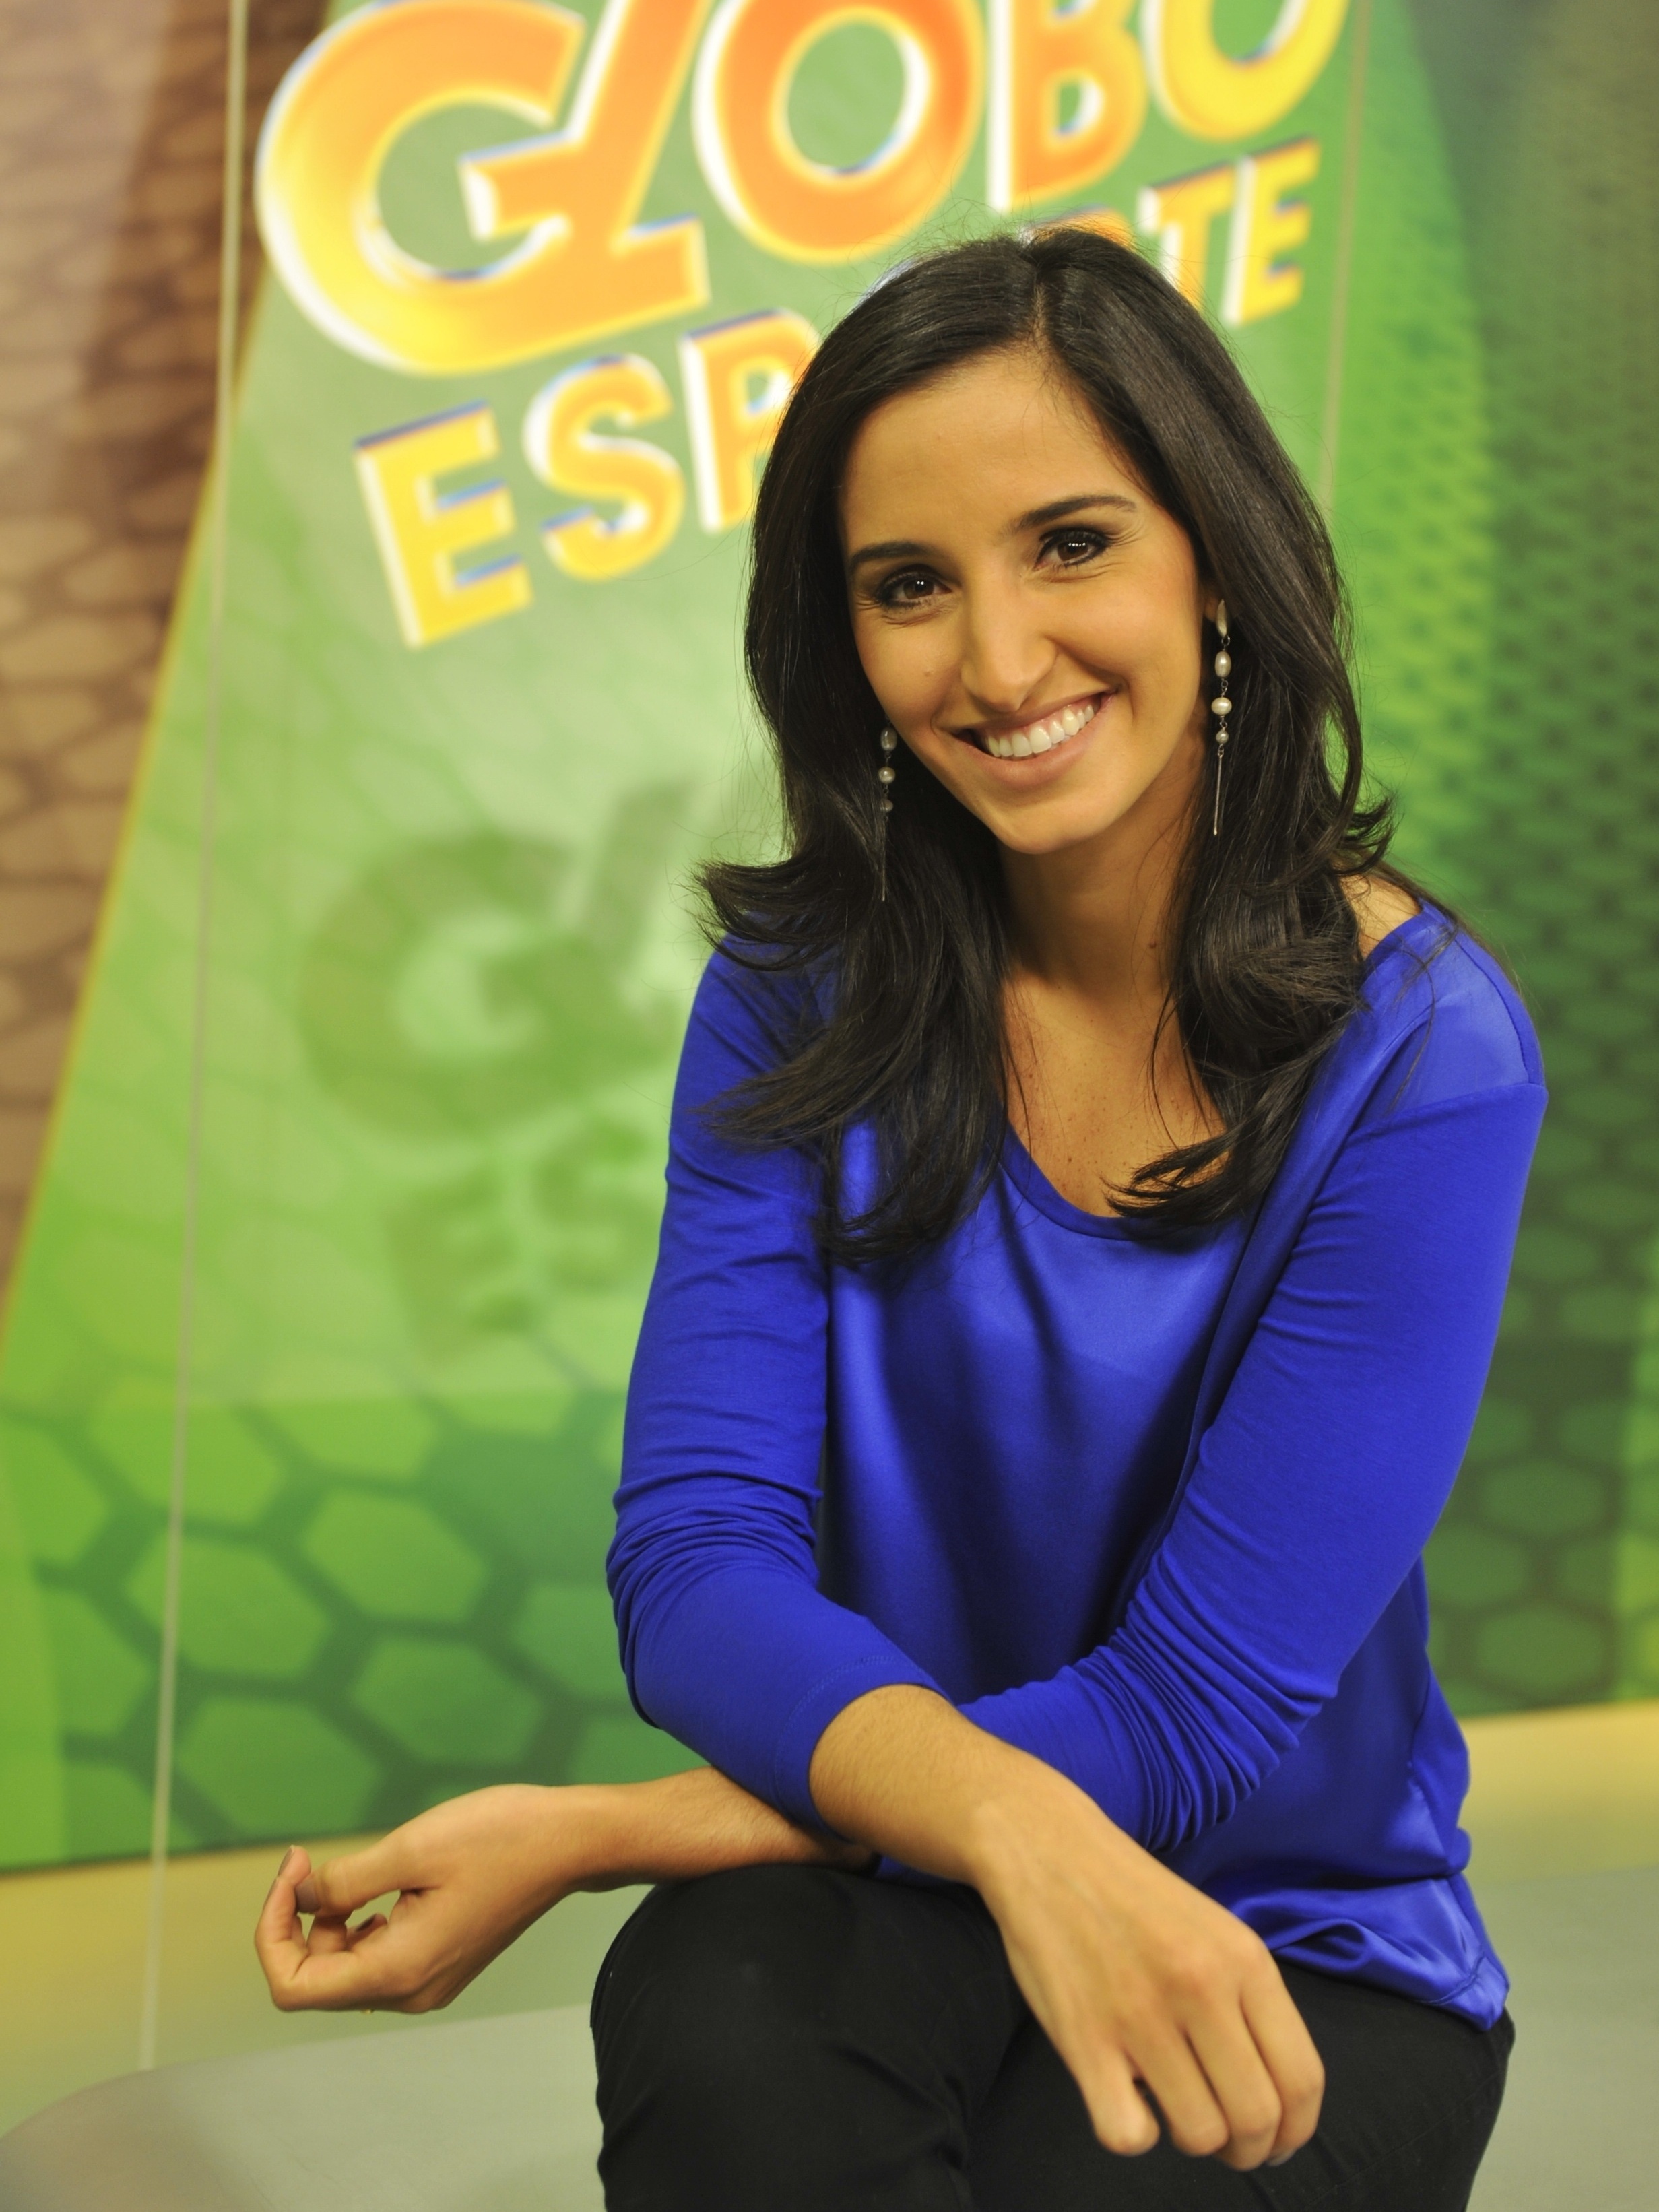 Alice Bastos Neves assume seus crespos no Globo Esporte